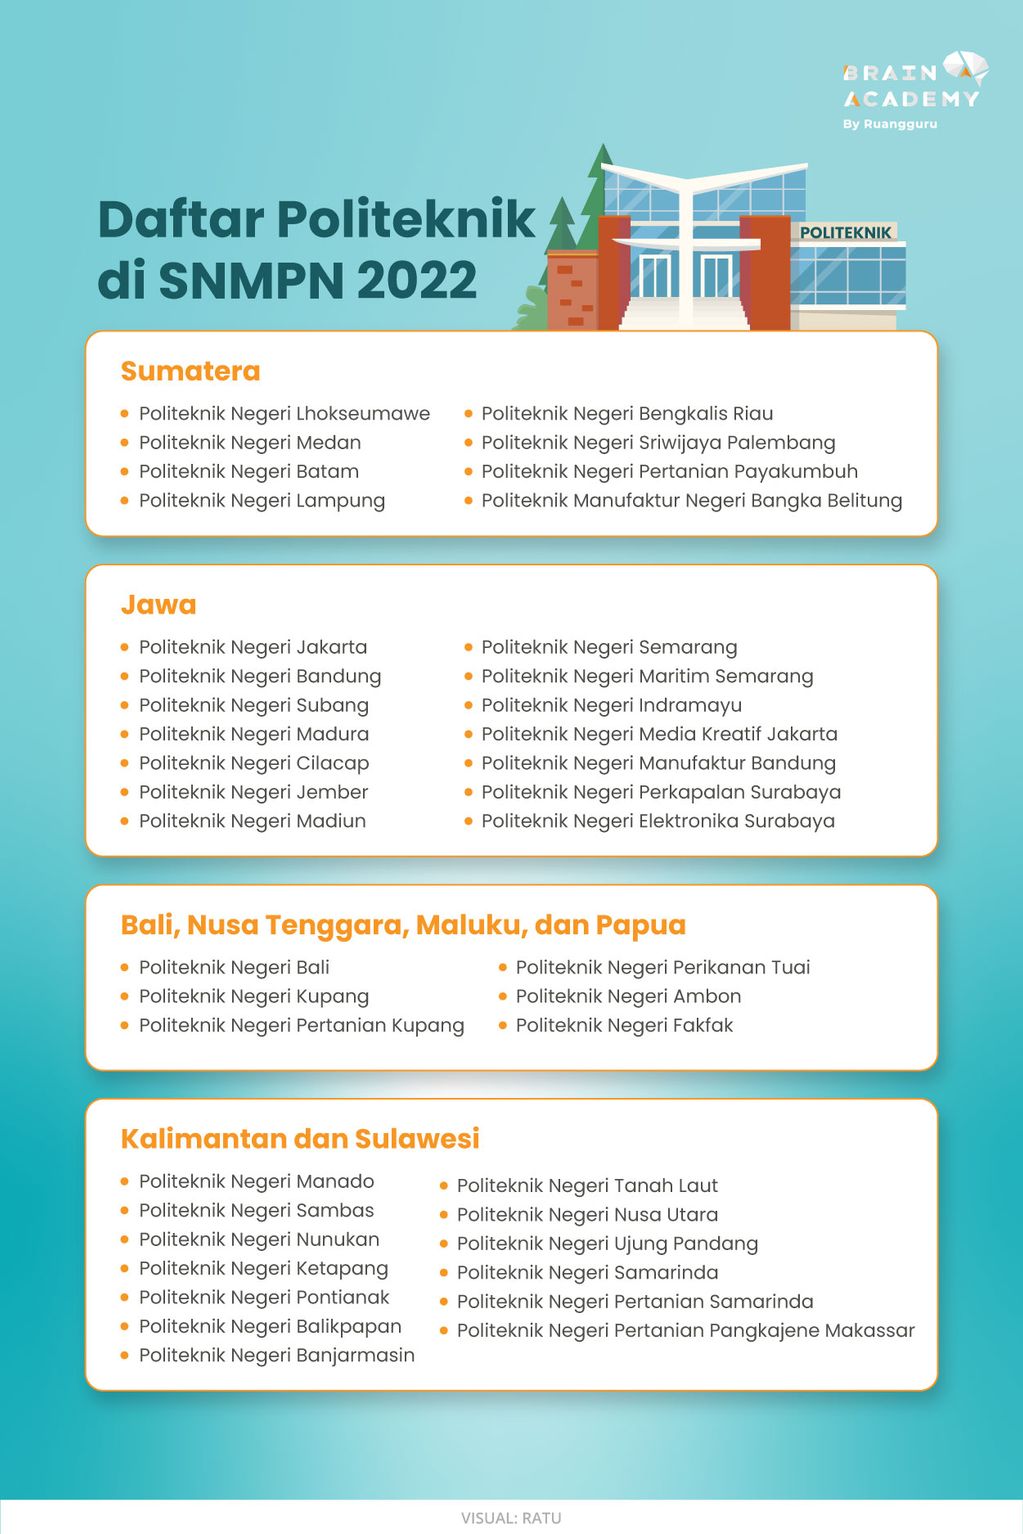 Daftar Politeknik SNMPN